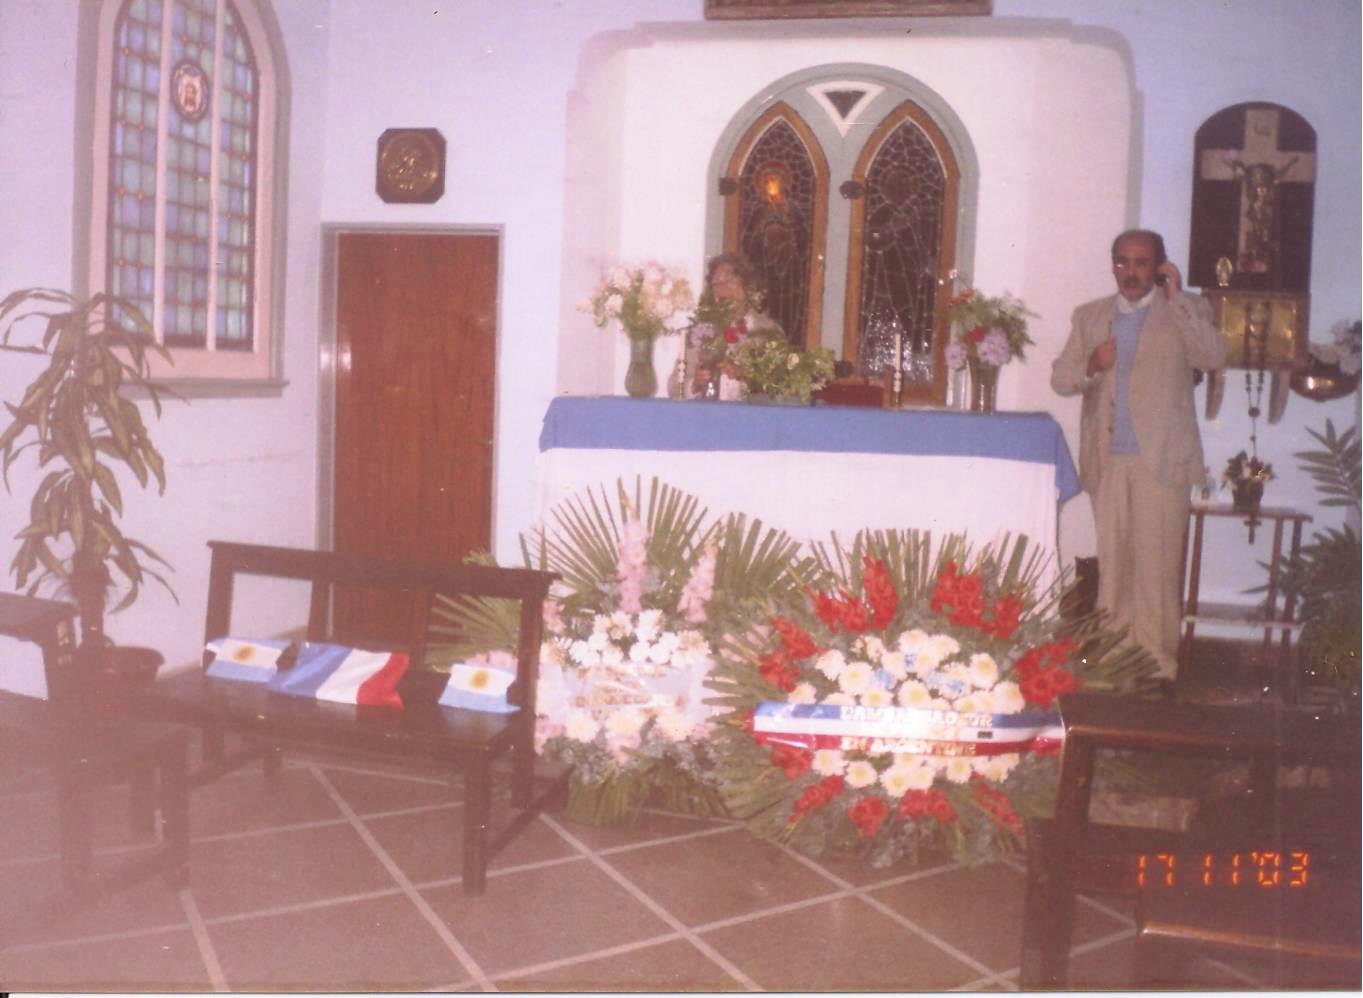 50 Aniv.Fallec. Cementerio Olivos - 17.11.2003 (1)